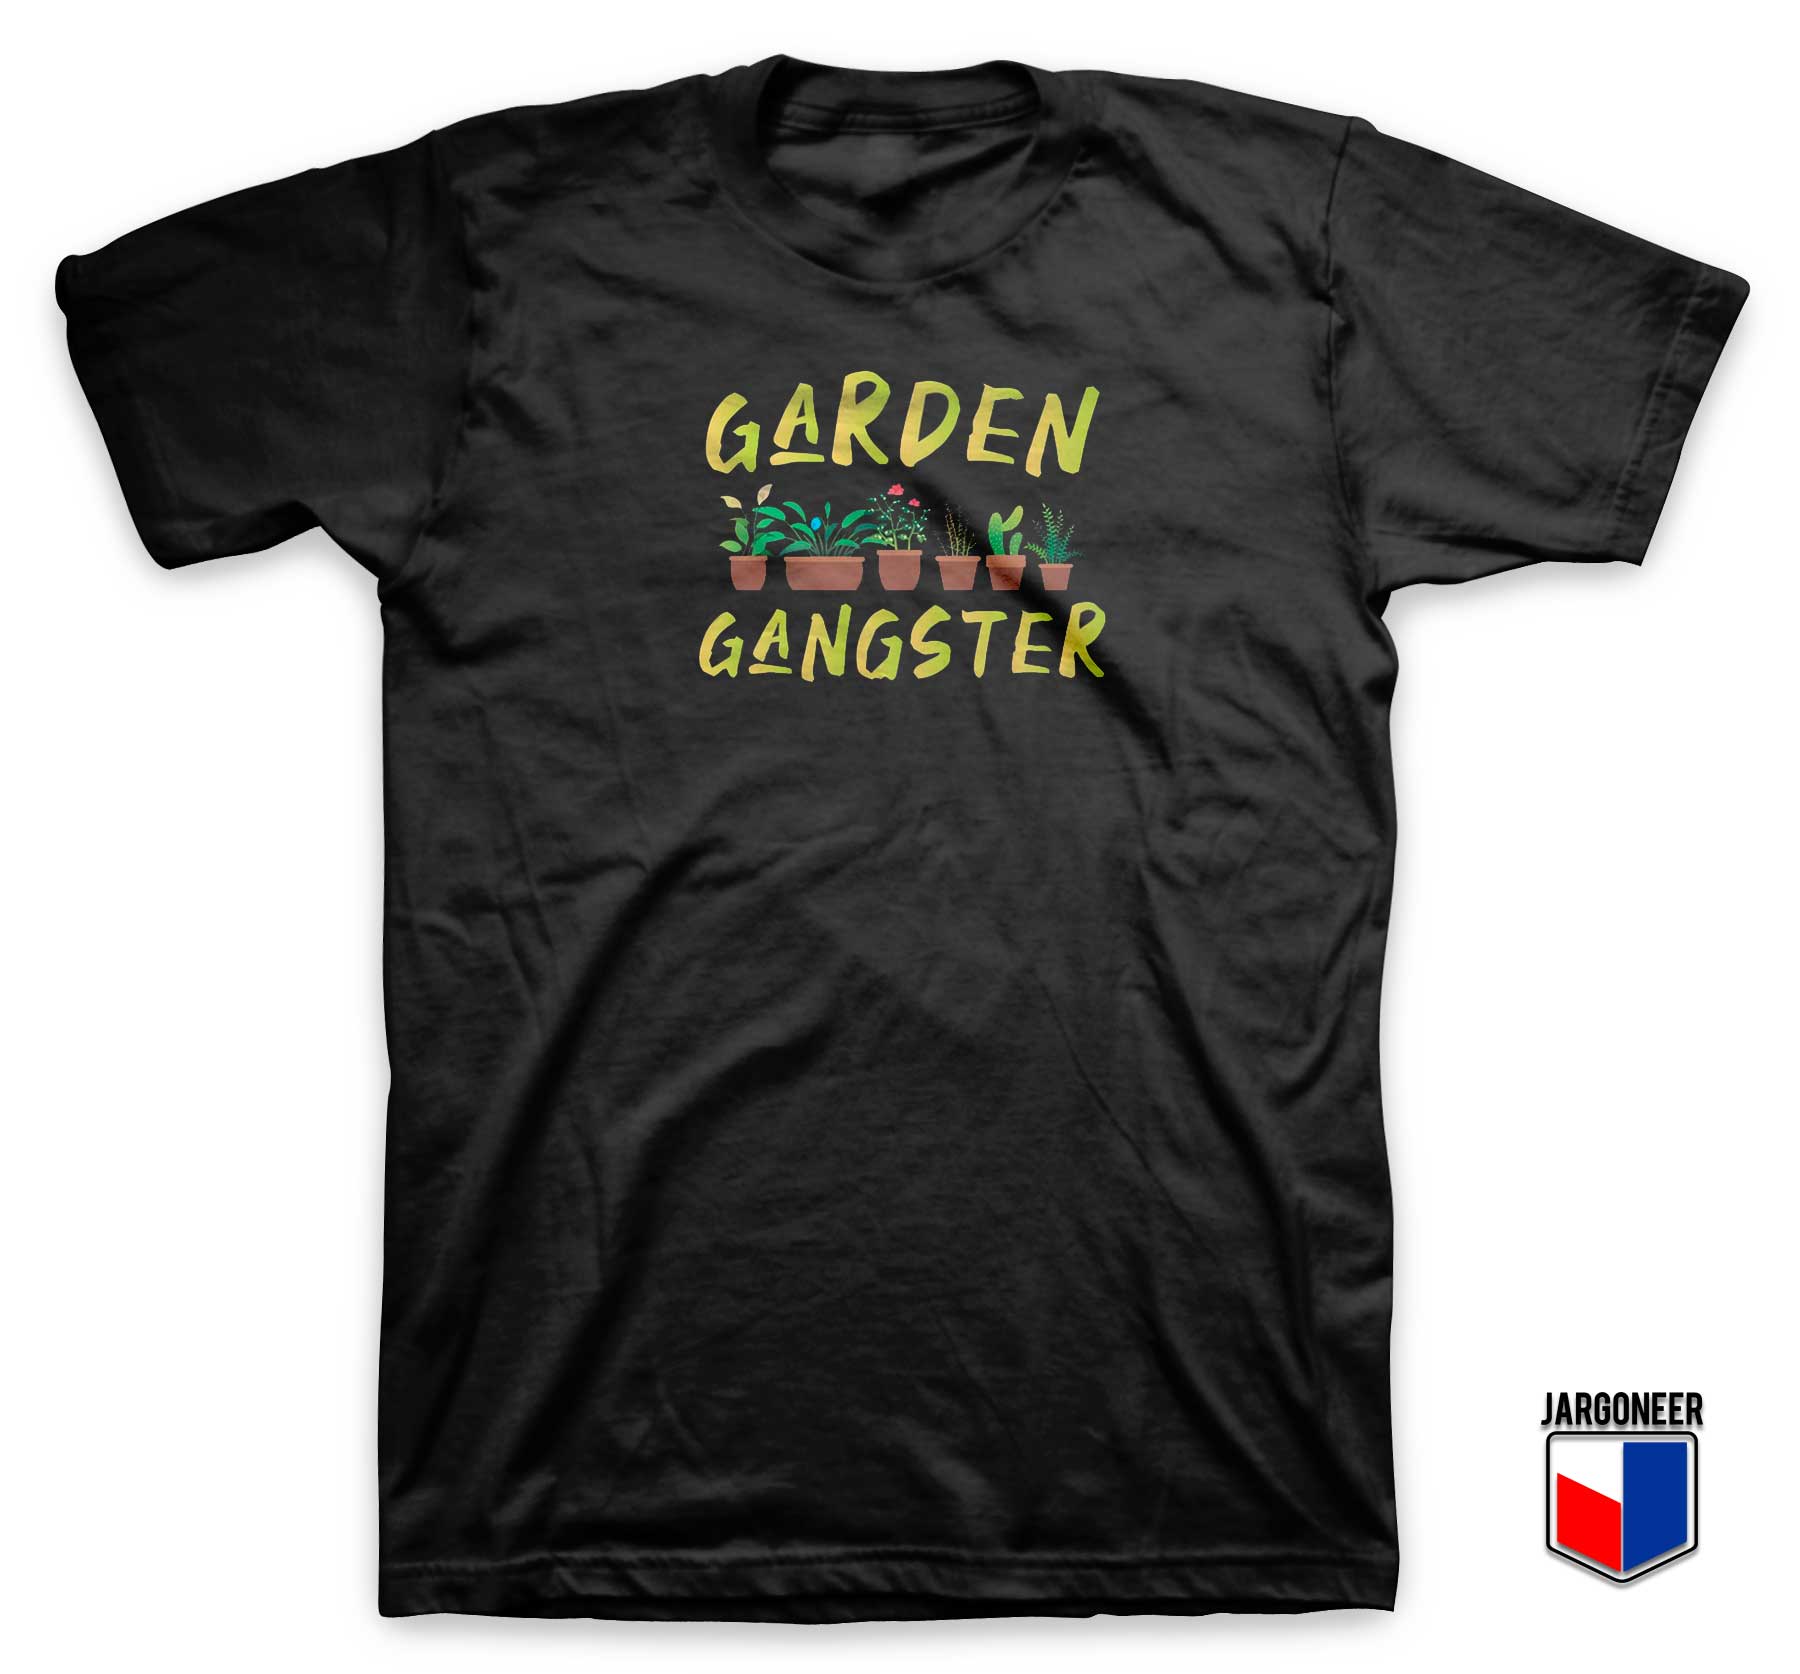 Garden Gangster T Shirt - Shop Unique Graphic Cool Shirt Designs